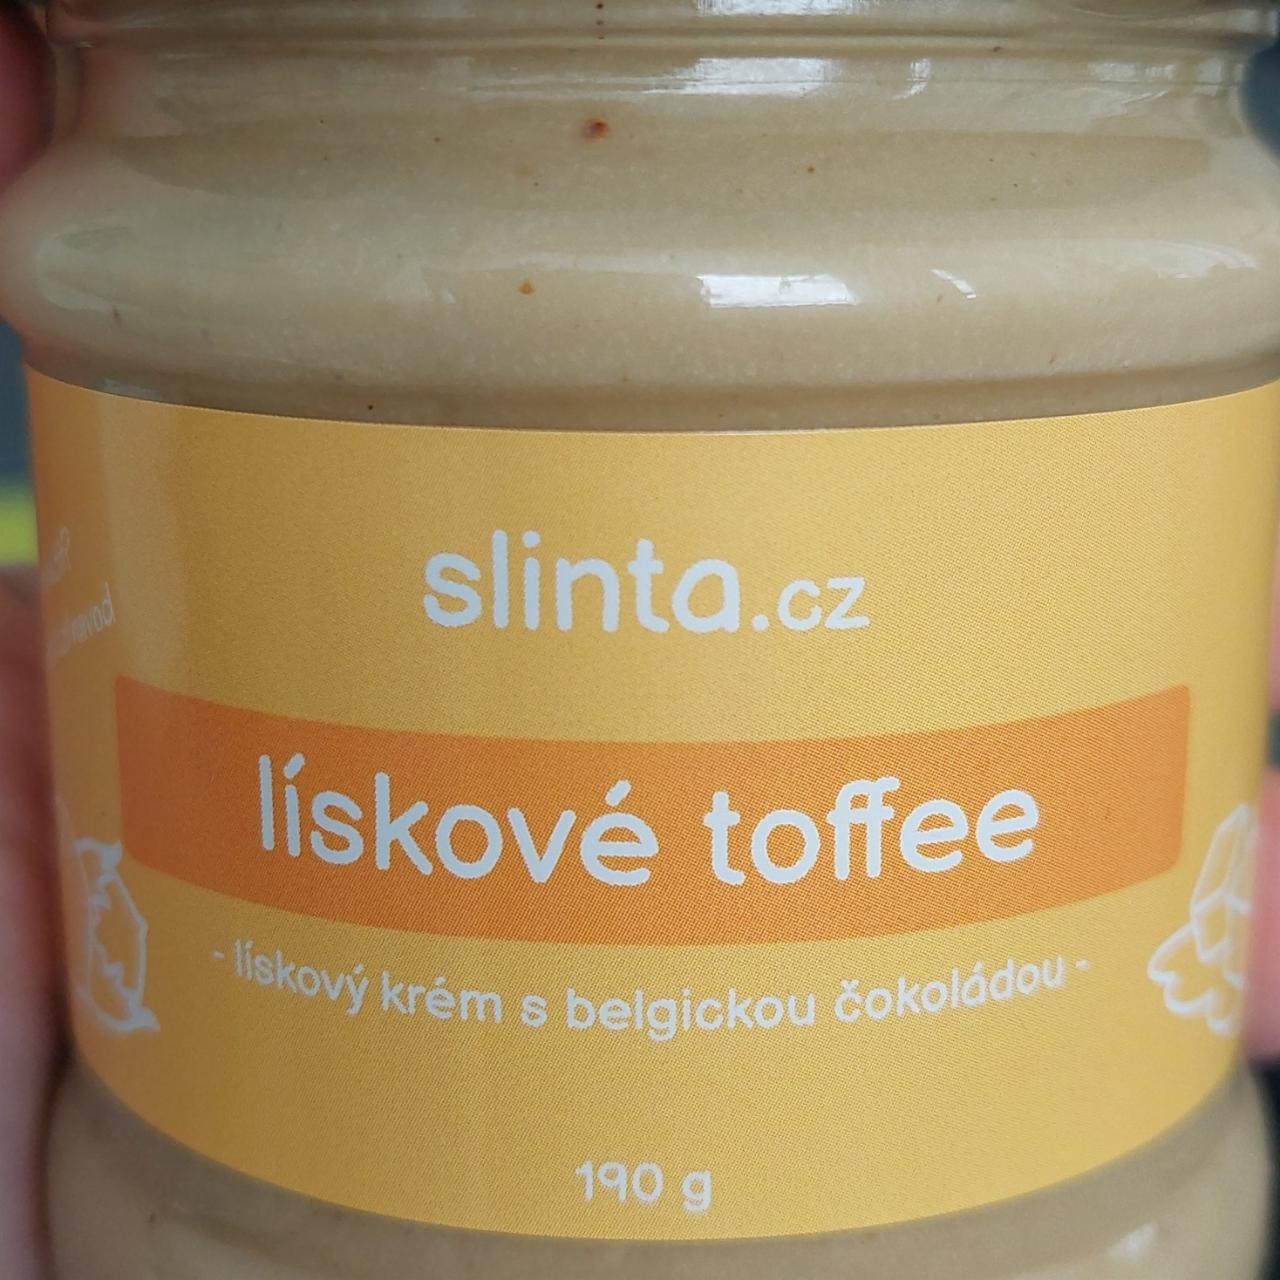 Fotografie - Lískové toffee slinta.cz